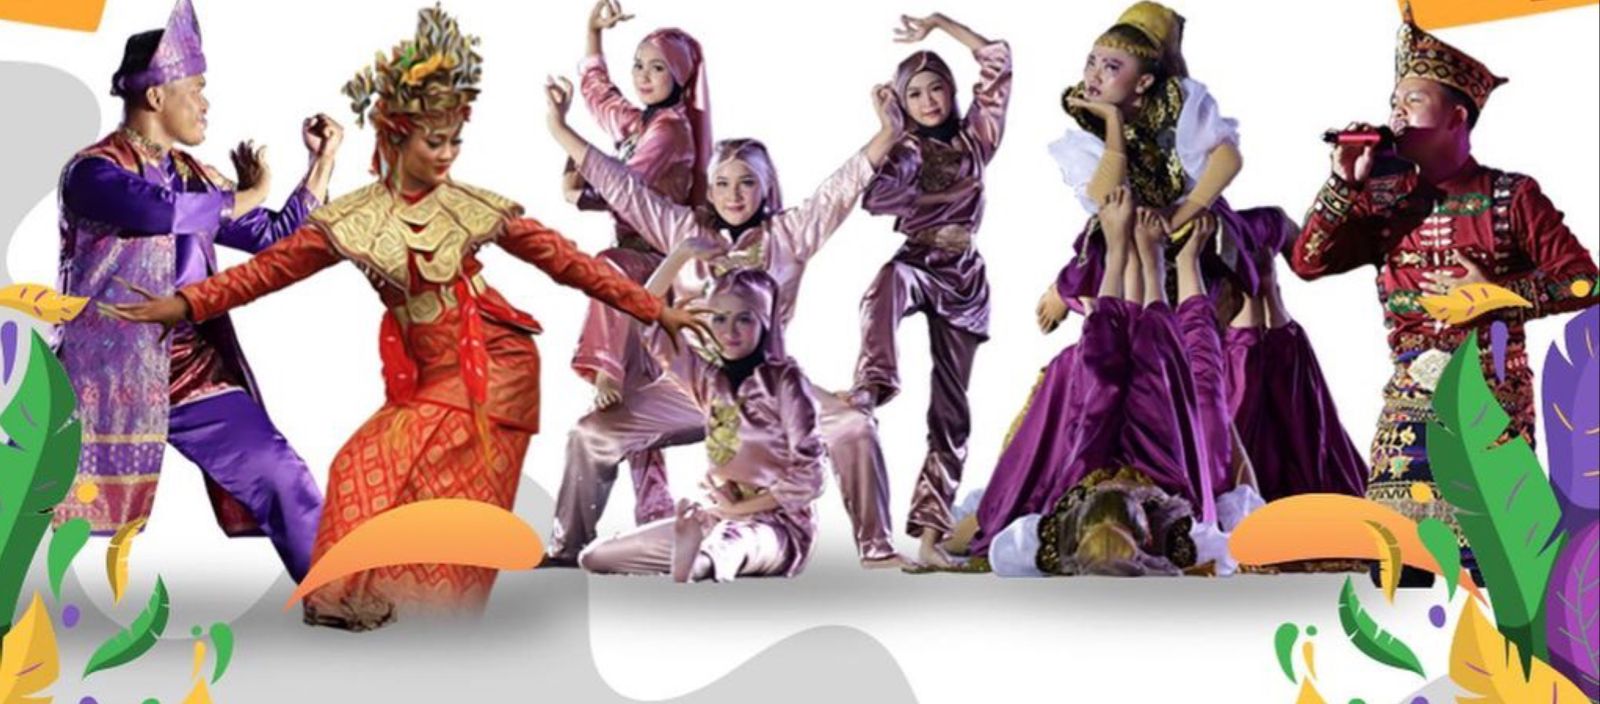 GRATIS! Datang dan Ramaikan Festival Sriwijaya XXXI di Benteng Kuto Besak, Banyak Pagelaran Seni dan Budaya 